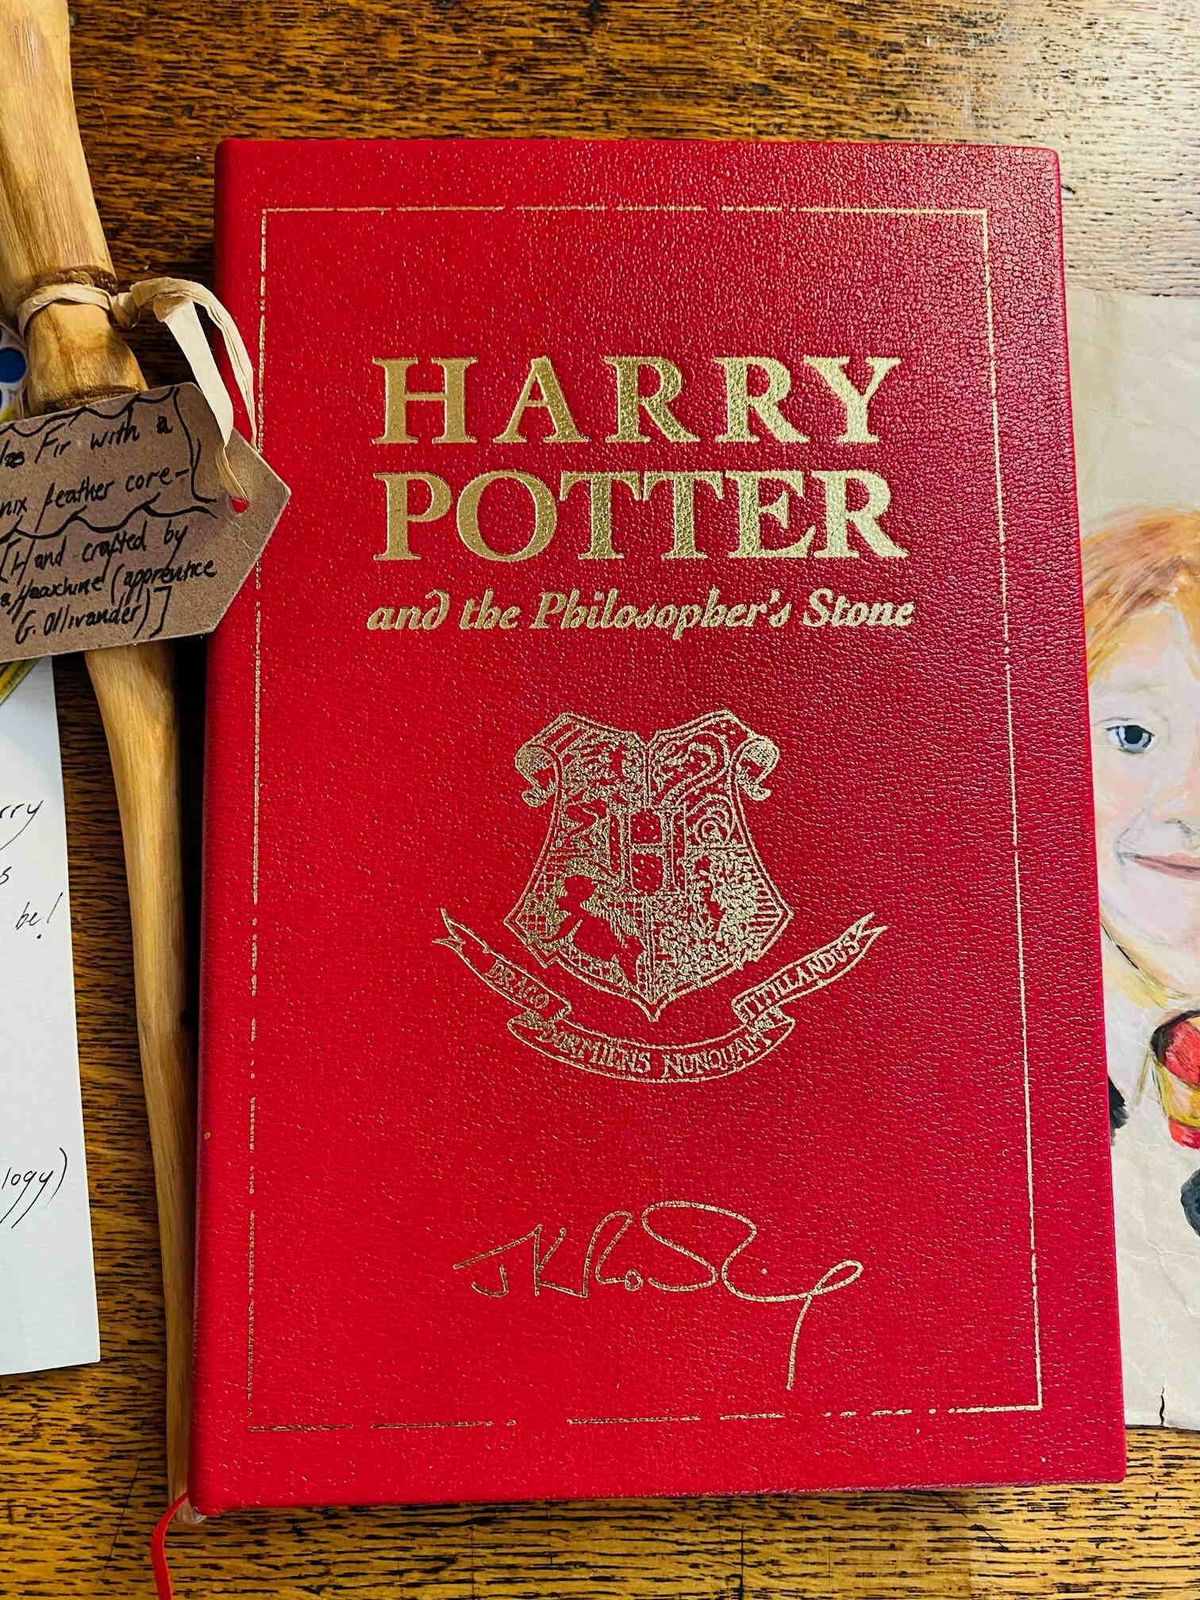 Az egyik legritkább Harry Potter kötet tizenötezer angol fontért kelt el egy aukción.